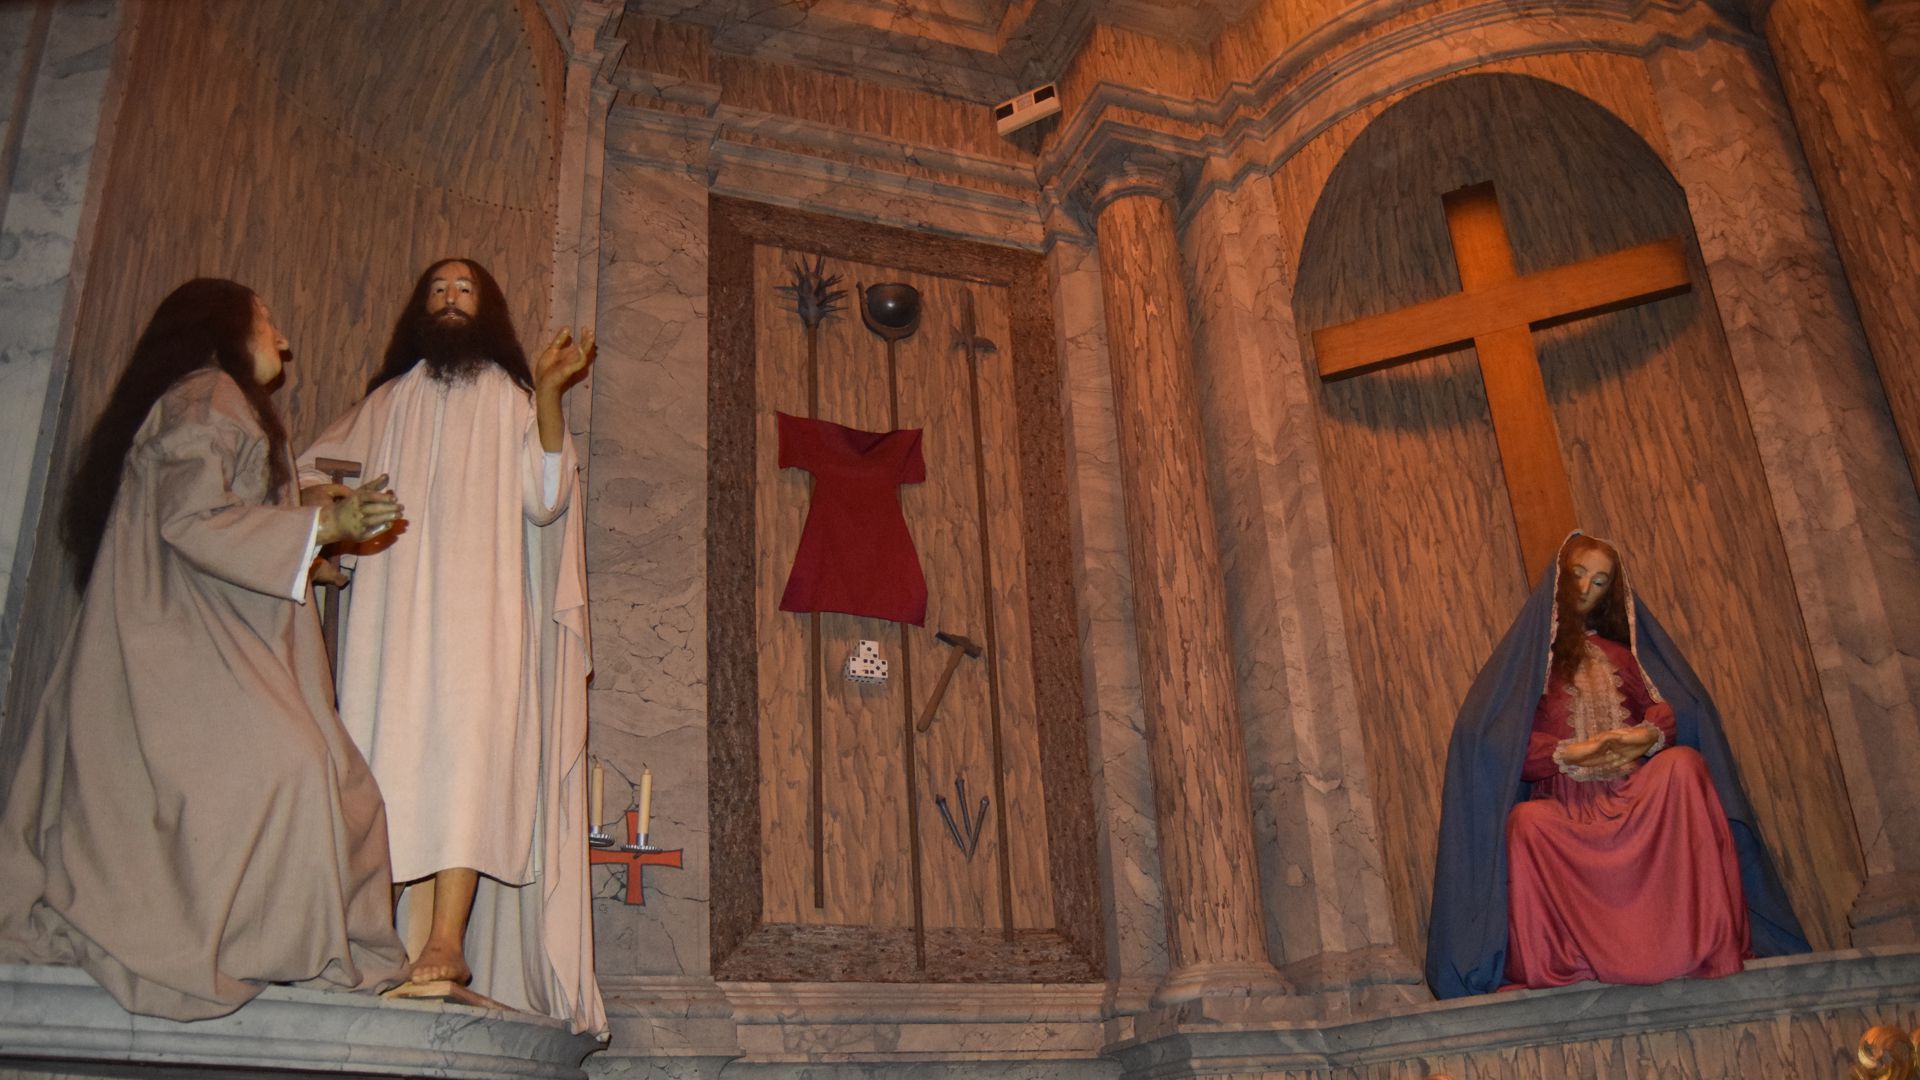 In der Magdalenenkapelle stehen mehrere lebensgroße Wachsfiguren. Sie stellen Jesus und Maria Magdalena dar.